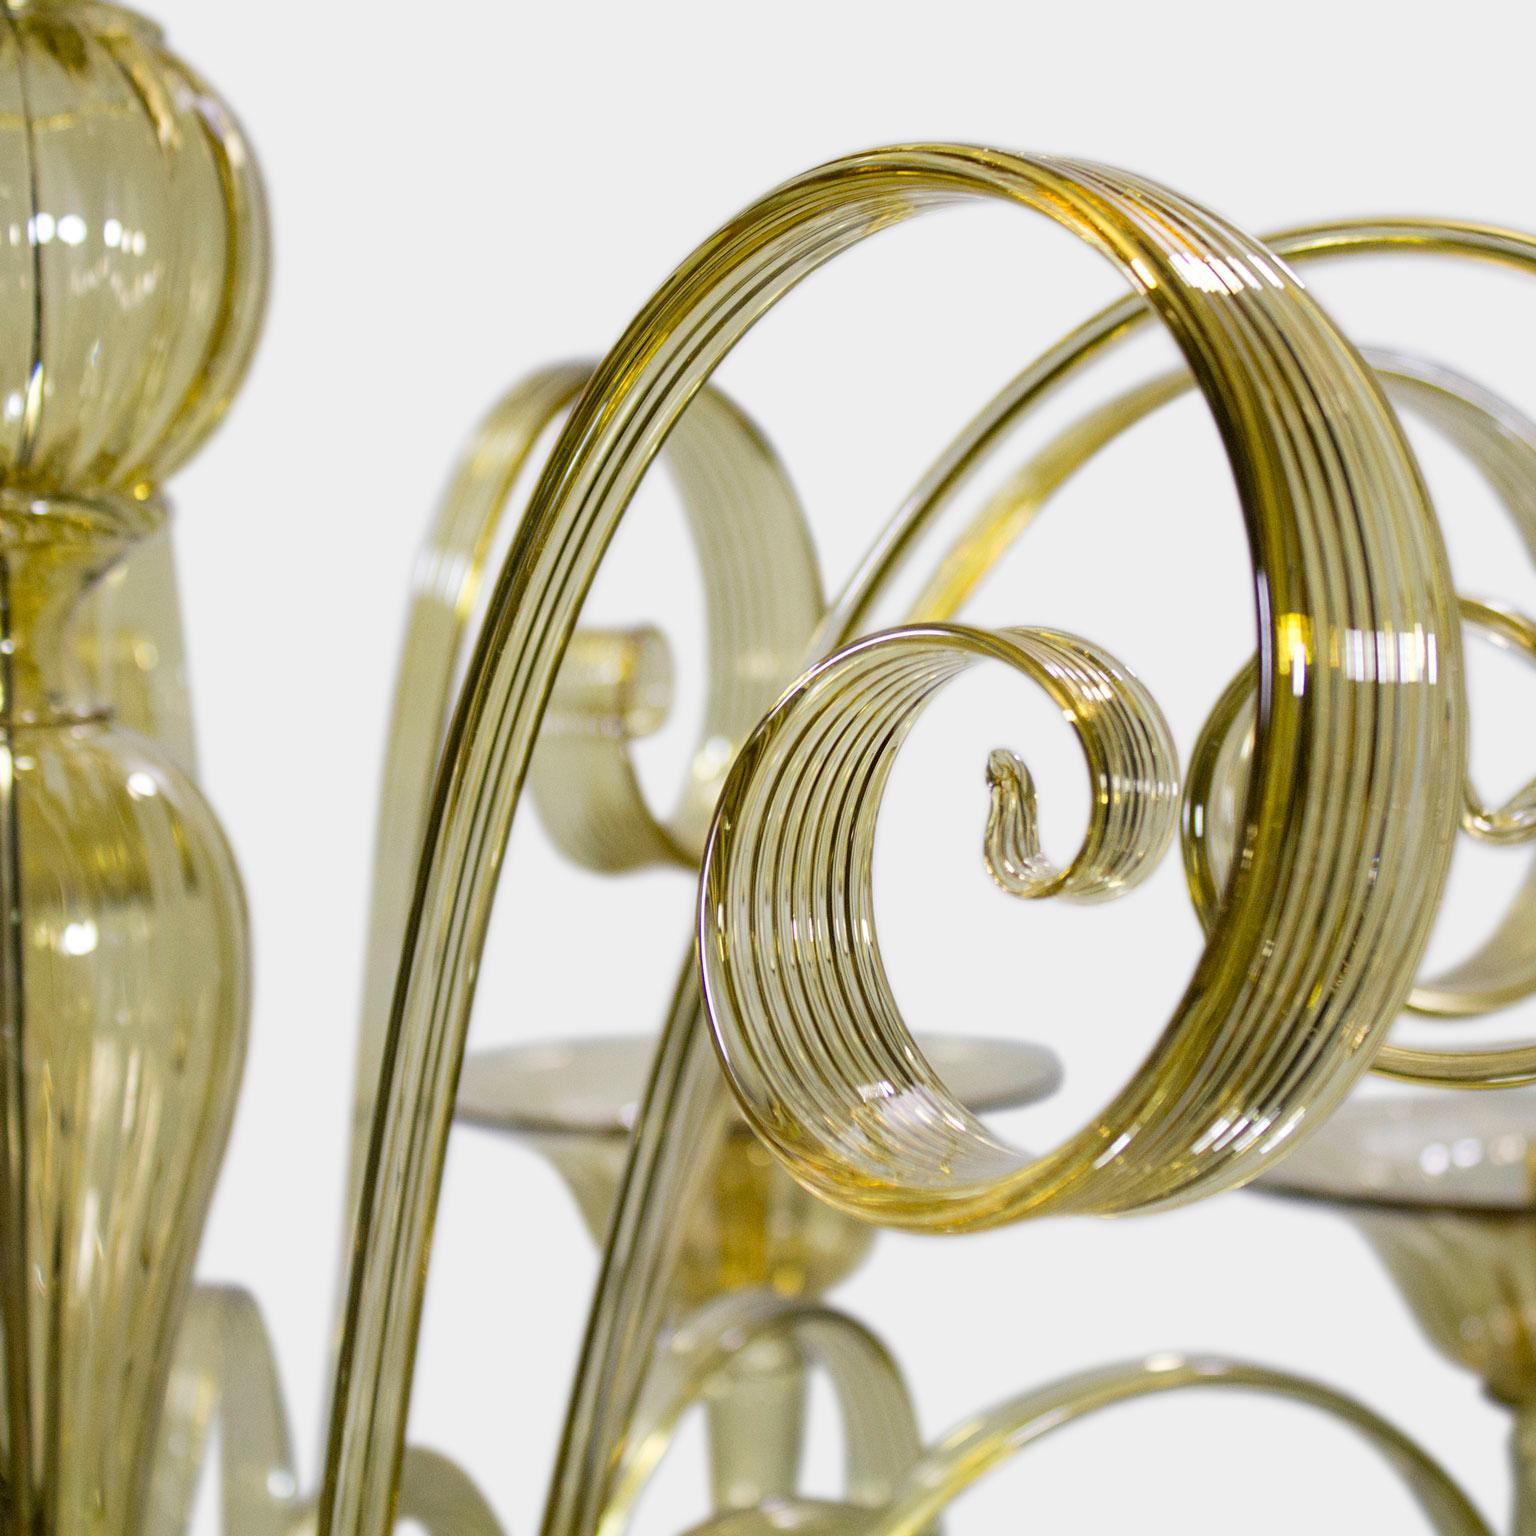 Capriccio von Multiforme ist ein doppelstöckiger Kronleuchter aus rauchfarbenem Quarzglas mit geschwungenen Ornamenten.
Es ist von der klassischen venezianischen Tradition inspiriert und zeichnet sich durch eine zentrale Säule aus, in der zahlreiche